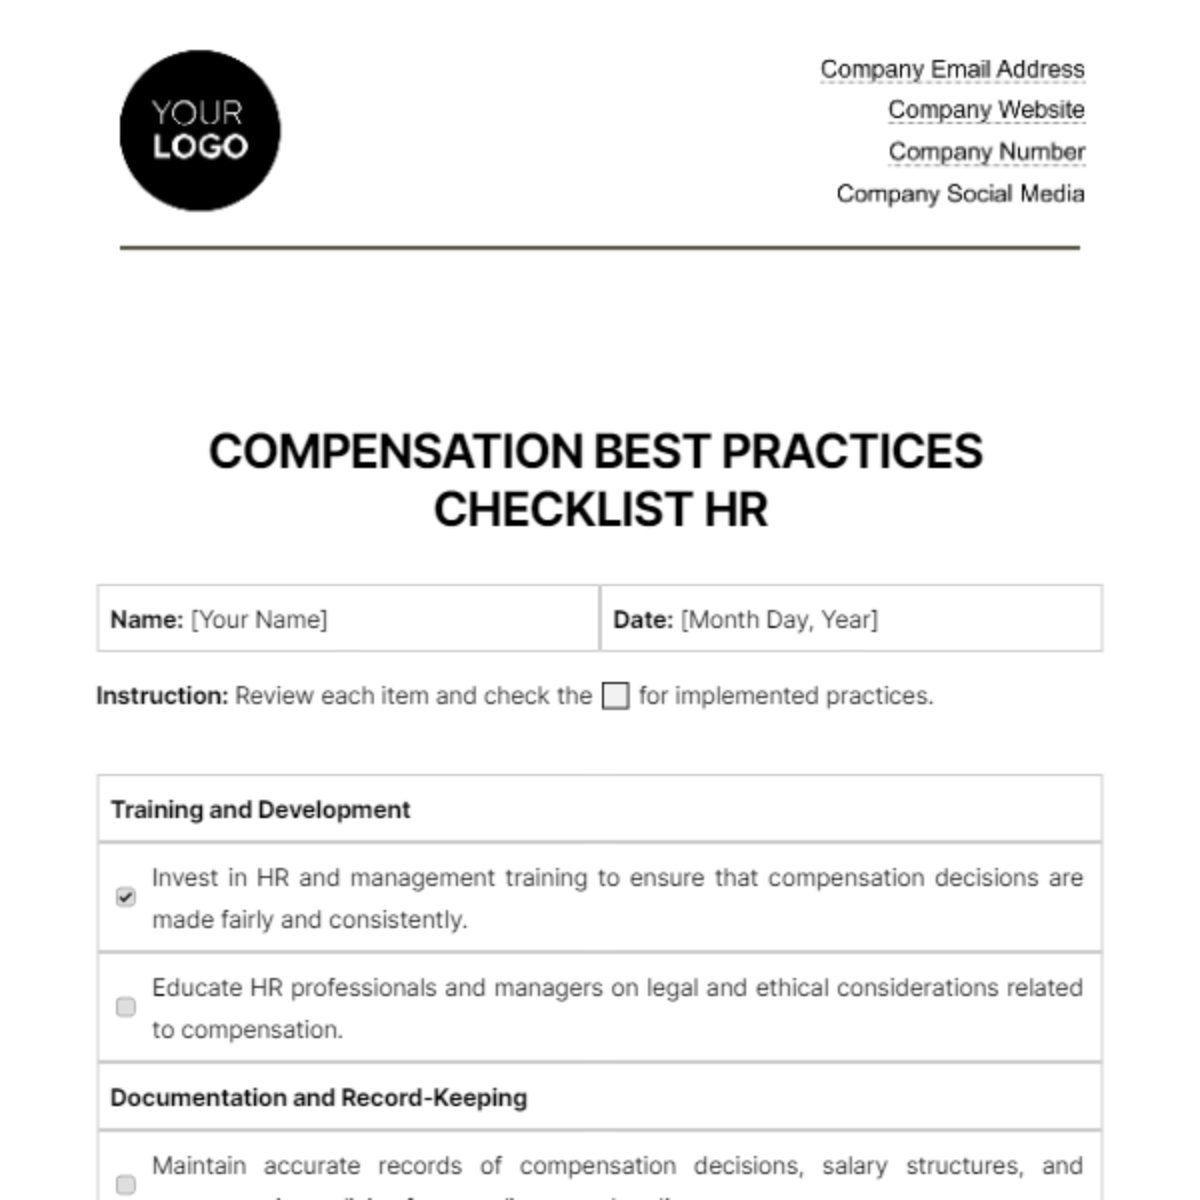 Compensation Best Practices Checklist HR Template